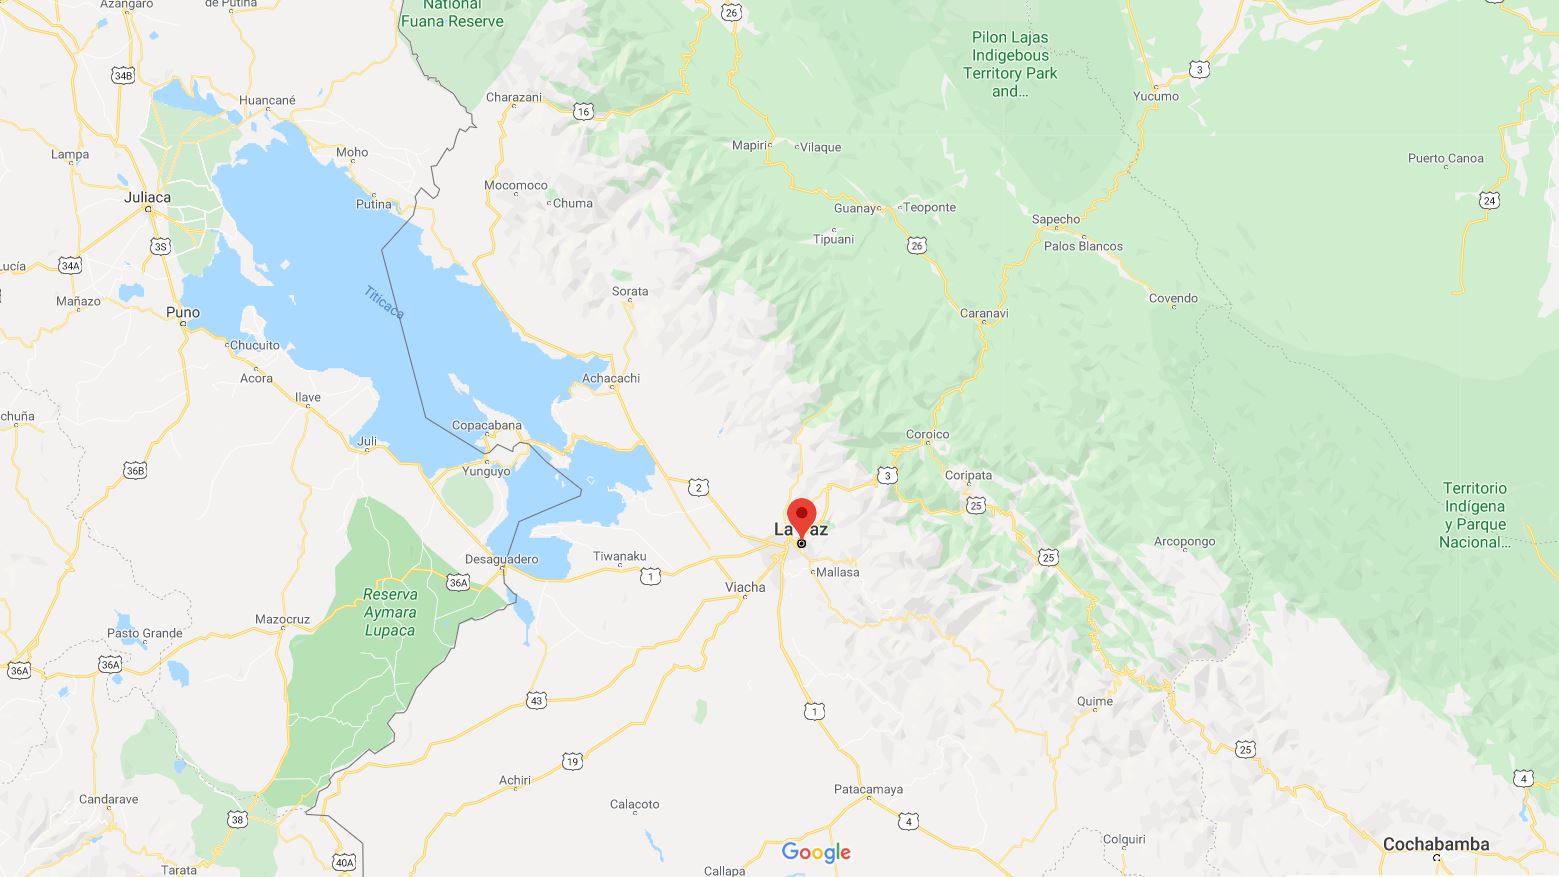 Mapa La Paz Bolivia cordillera real